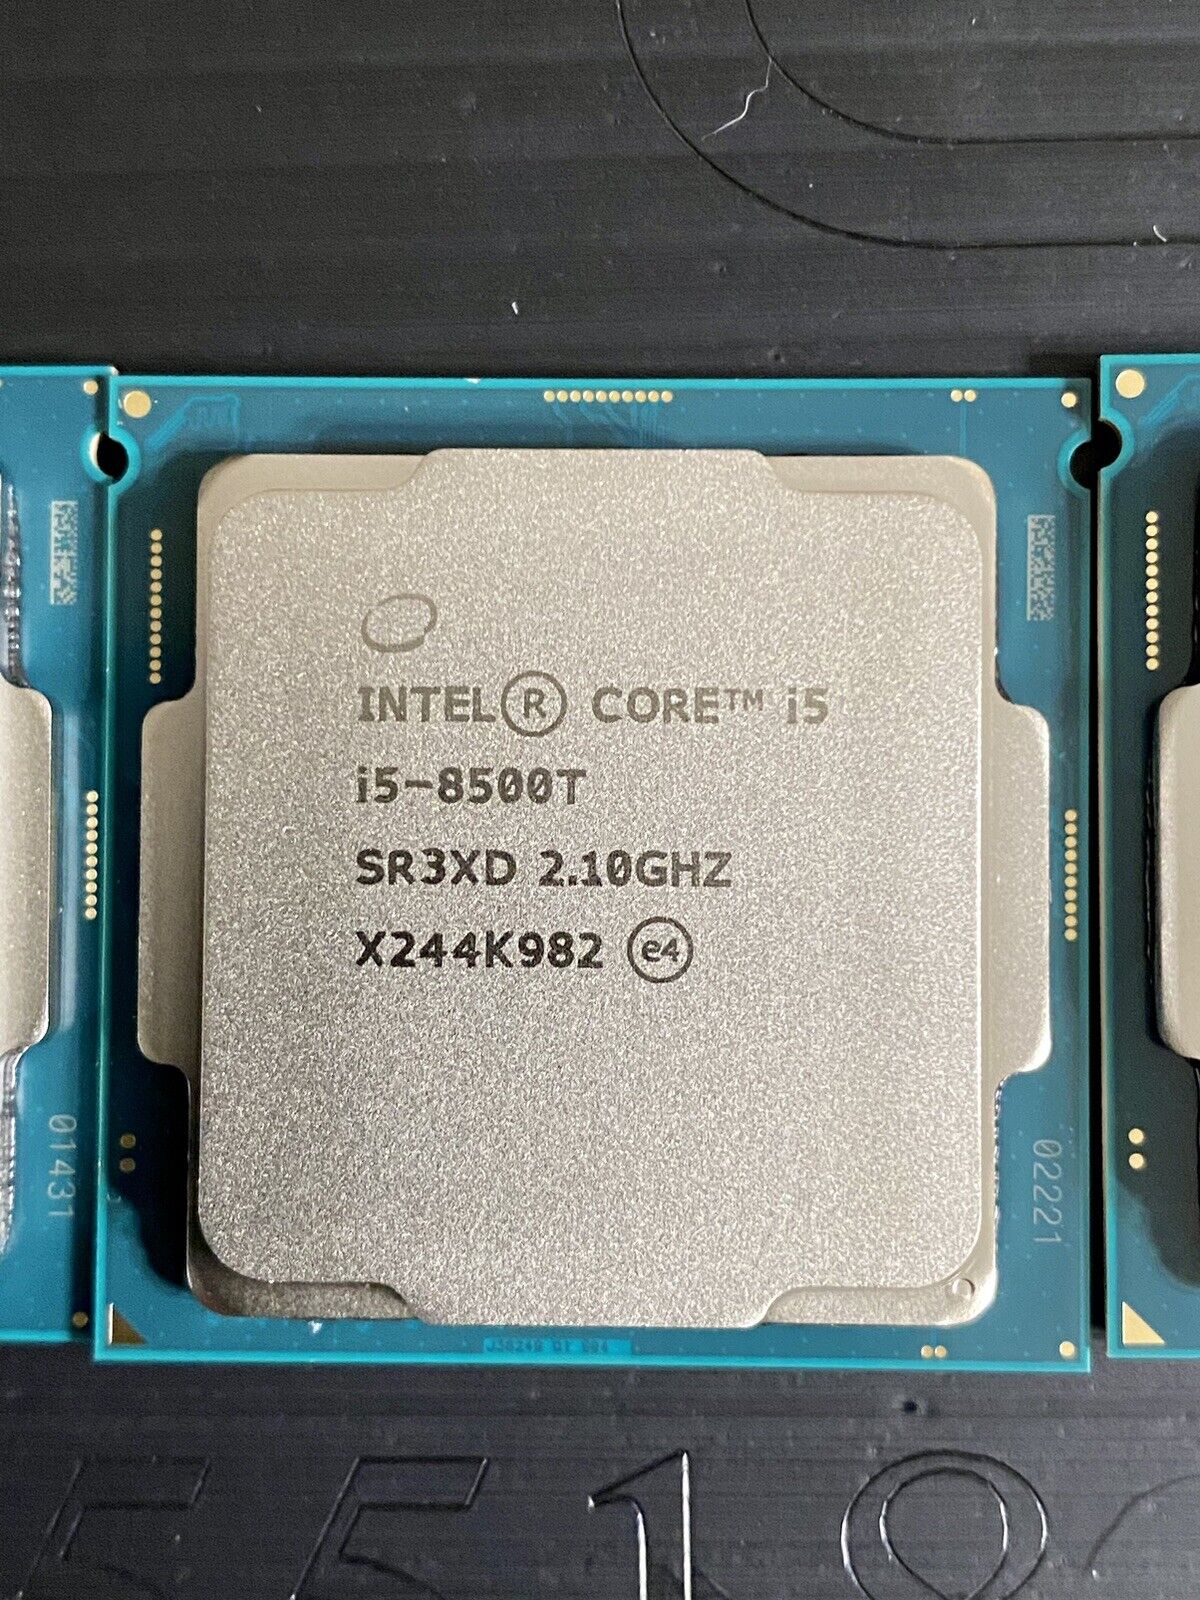 Intel Core i5-8500T - 2.1 GHz 6-Core (CM8068403362509) Processor 